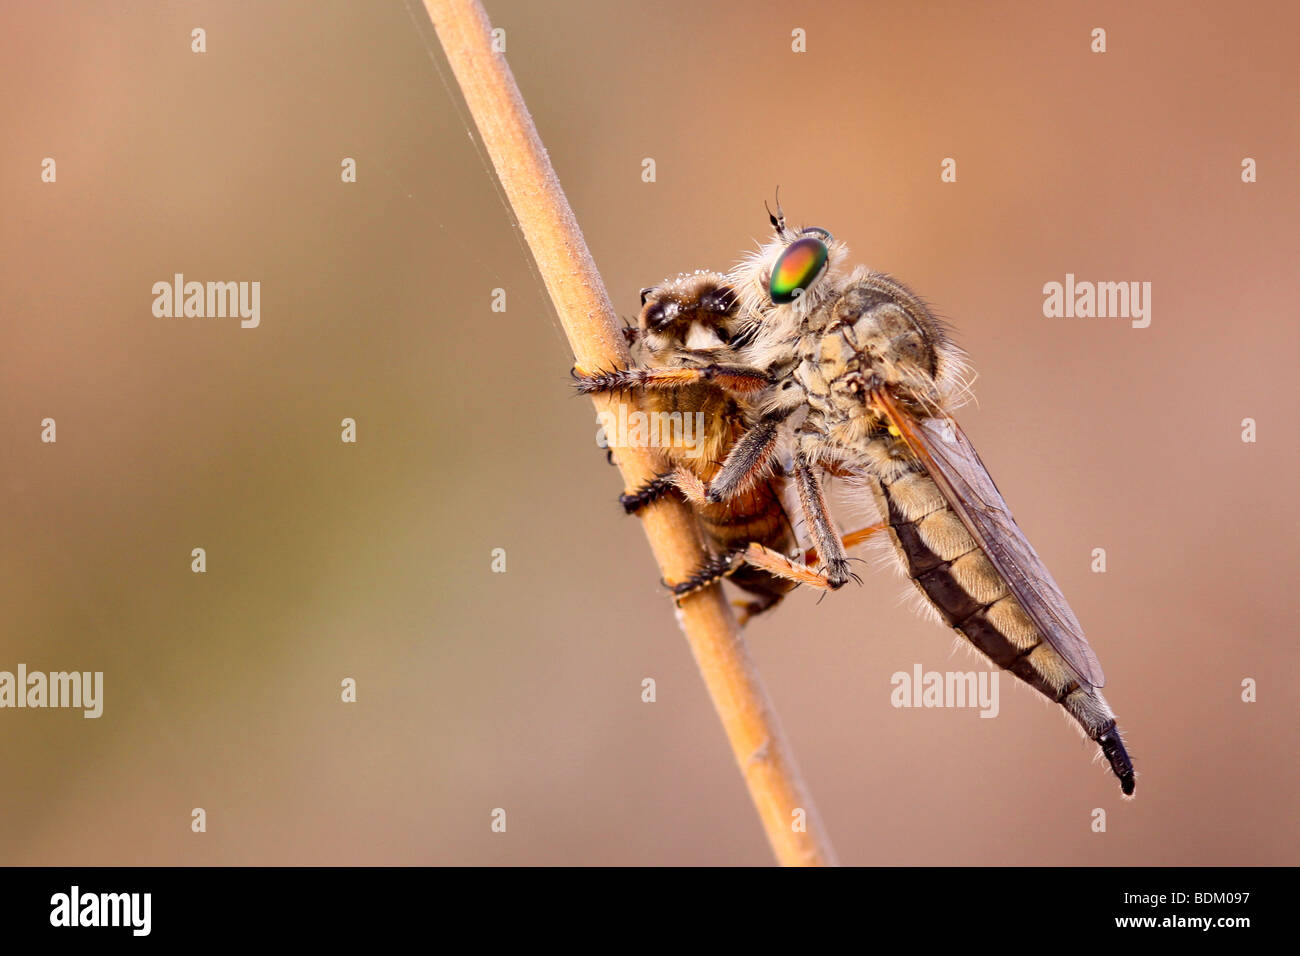 Ladrón de volar (Asilidae) alimenta fuera capturado una abeja chupando los fluidos corporales de la presa Foto de stock